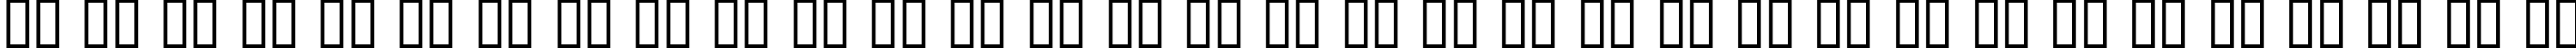 Пример написания русского алфавита шрифтом Cheri